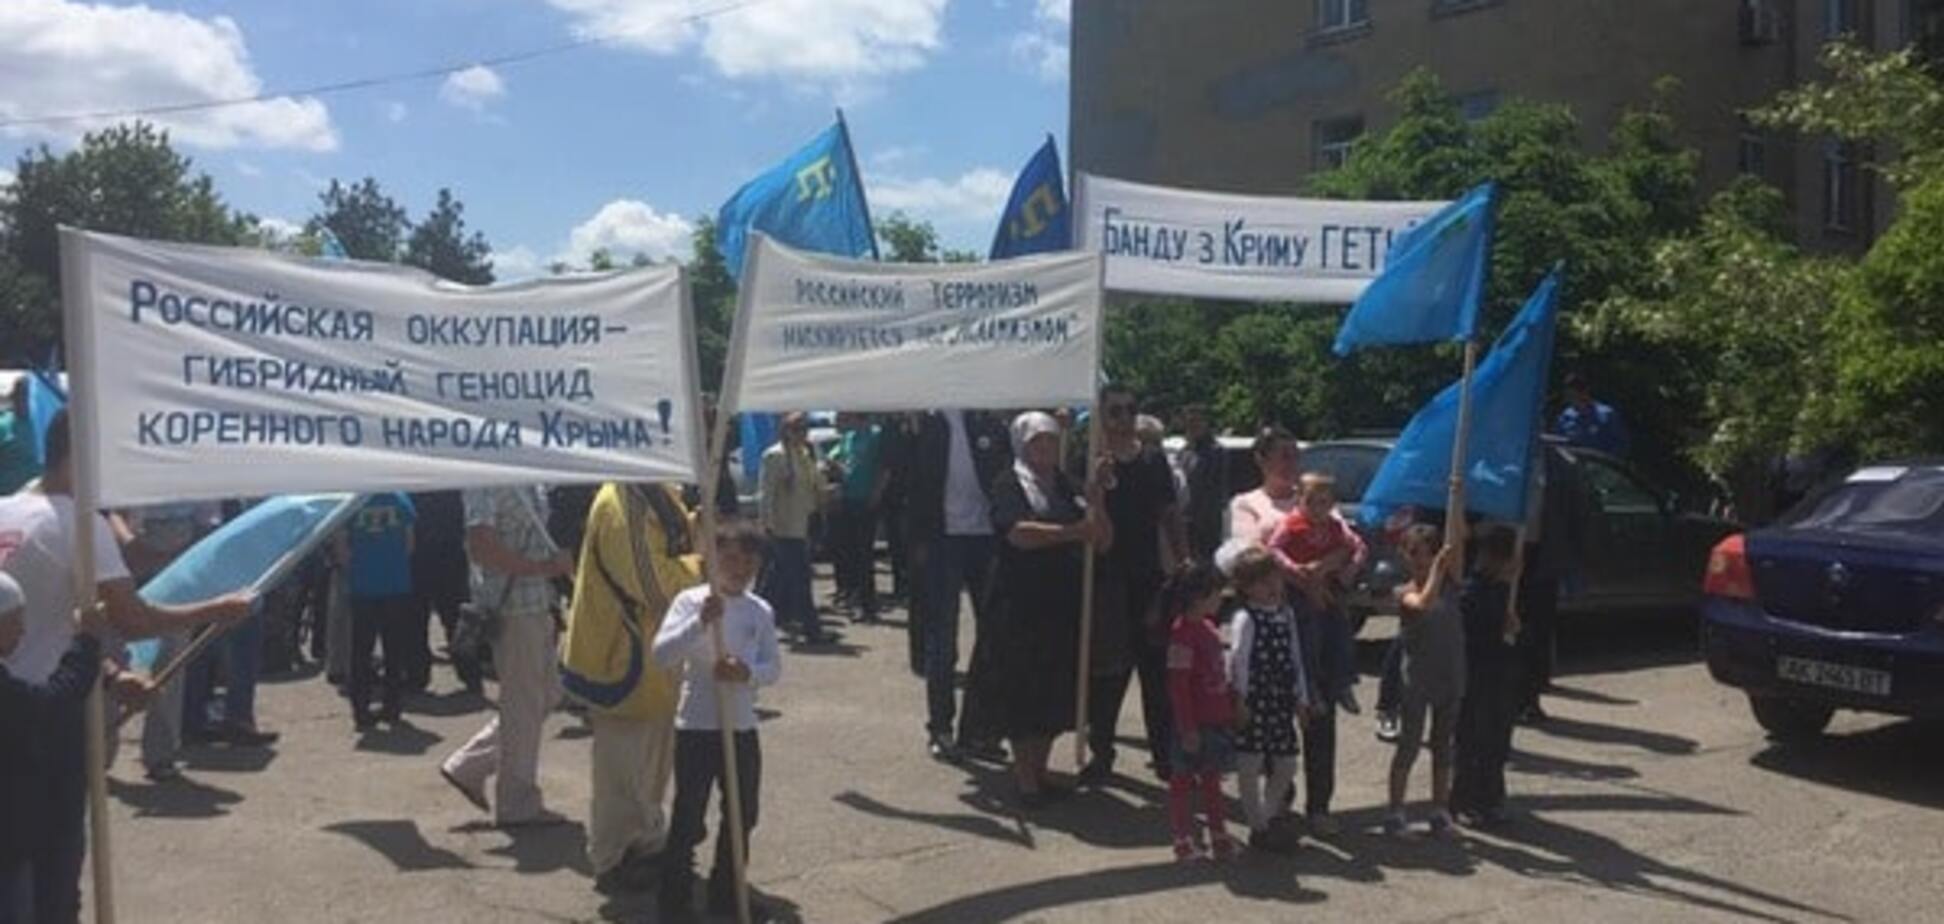 'Банду з Криму геть': крымские татары почтили жертв депортации на границе с полуостровом